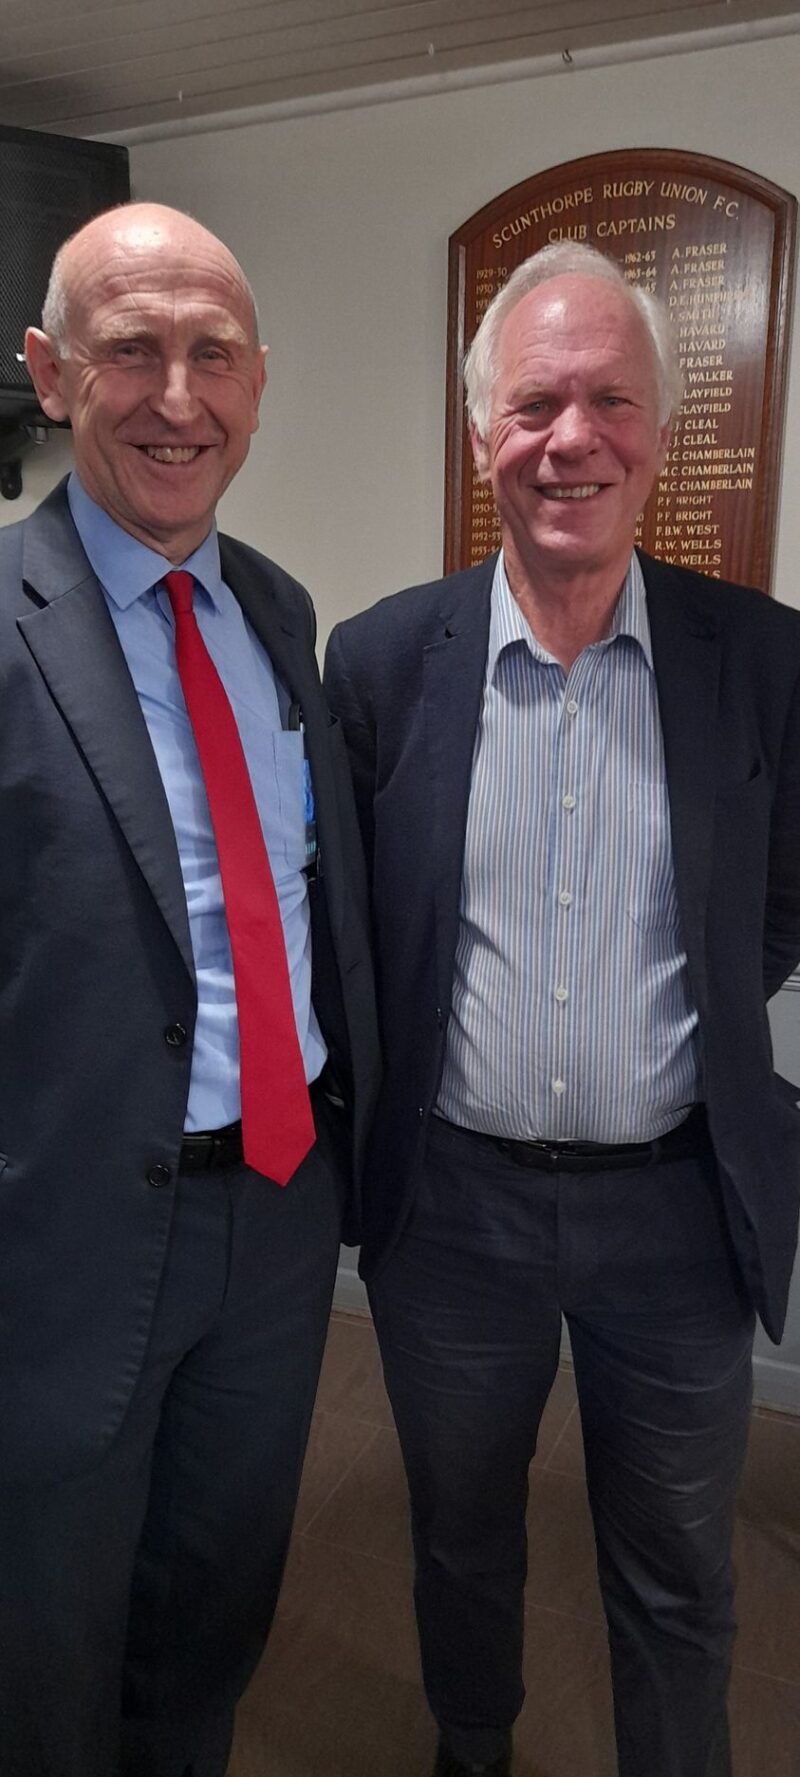 John Healey MP and Nic Dakin